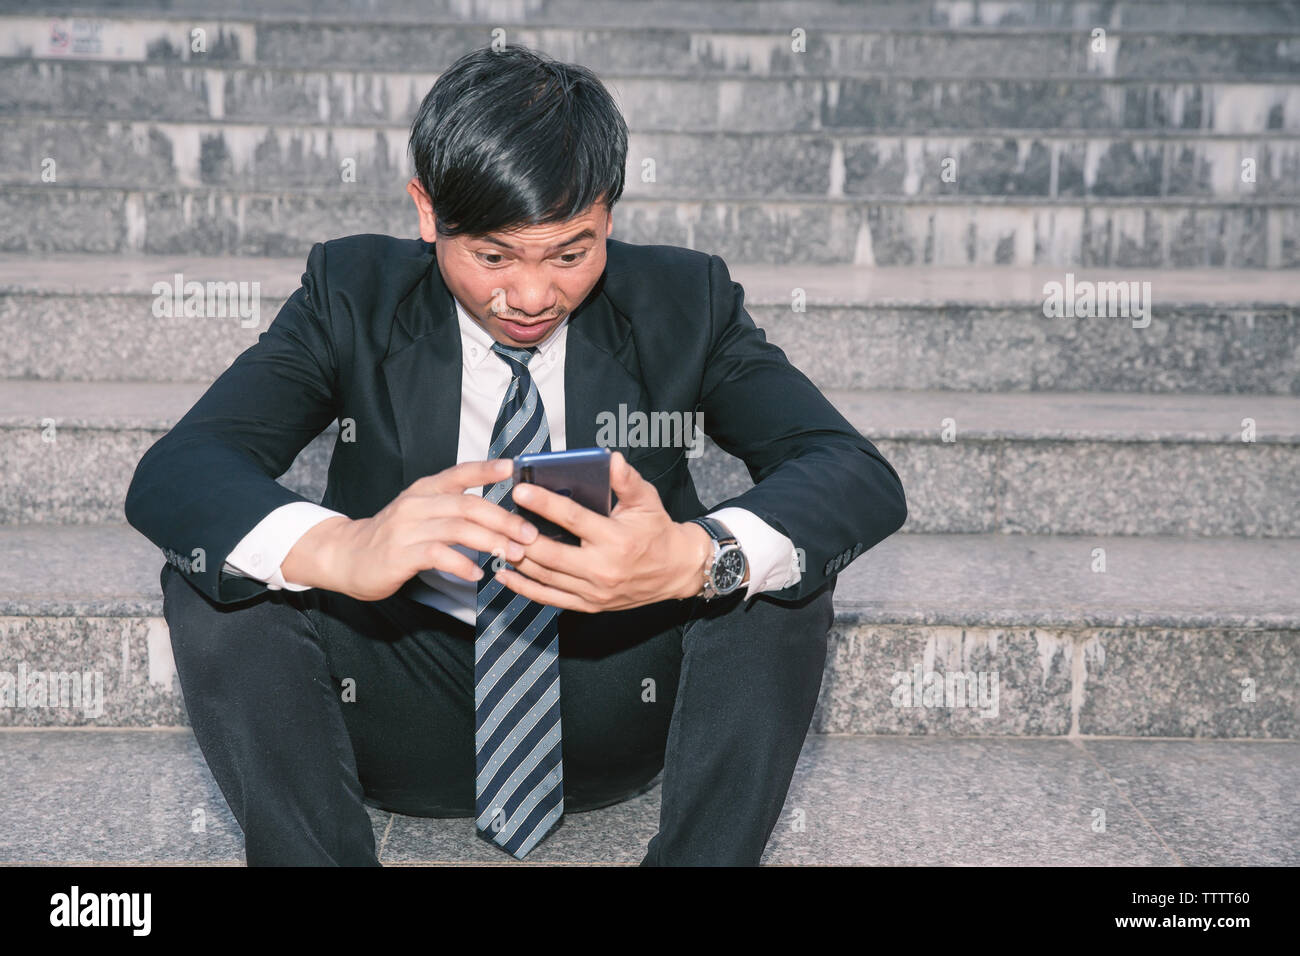 Gli imprenditori asiatici con mal di testa o emicrania presso il municipio dopo le immagini di lavoro di giovani imprenditori che sono stanchi, stress, crisi, depressione, failu Foto Stock